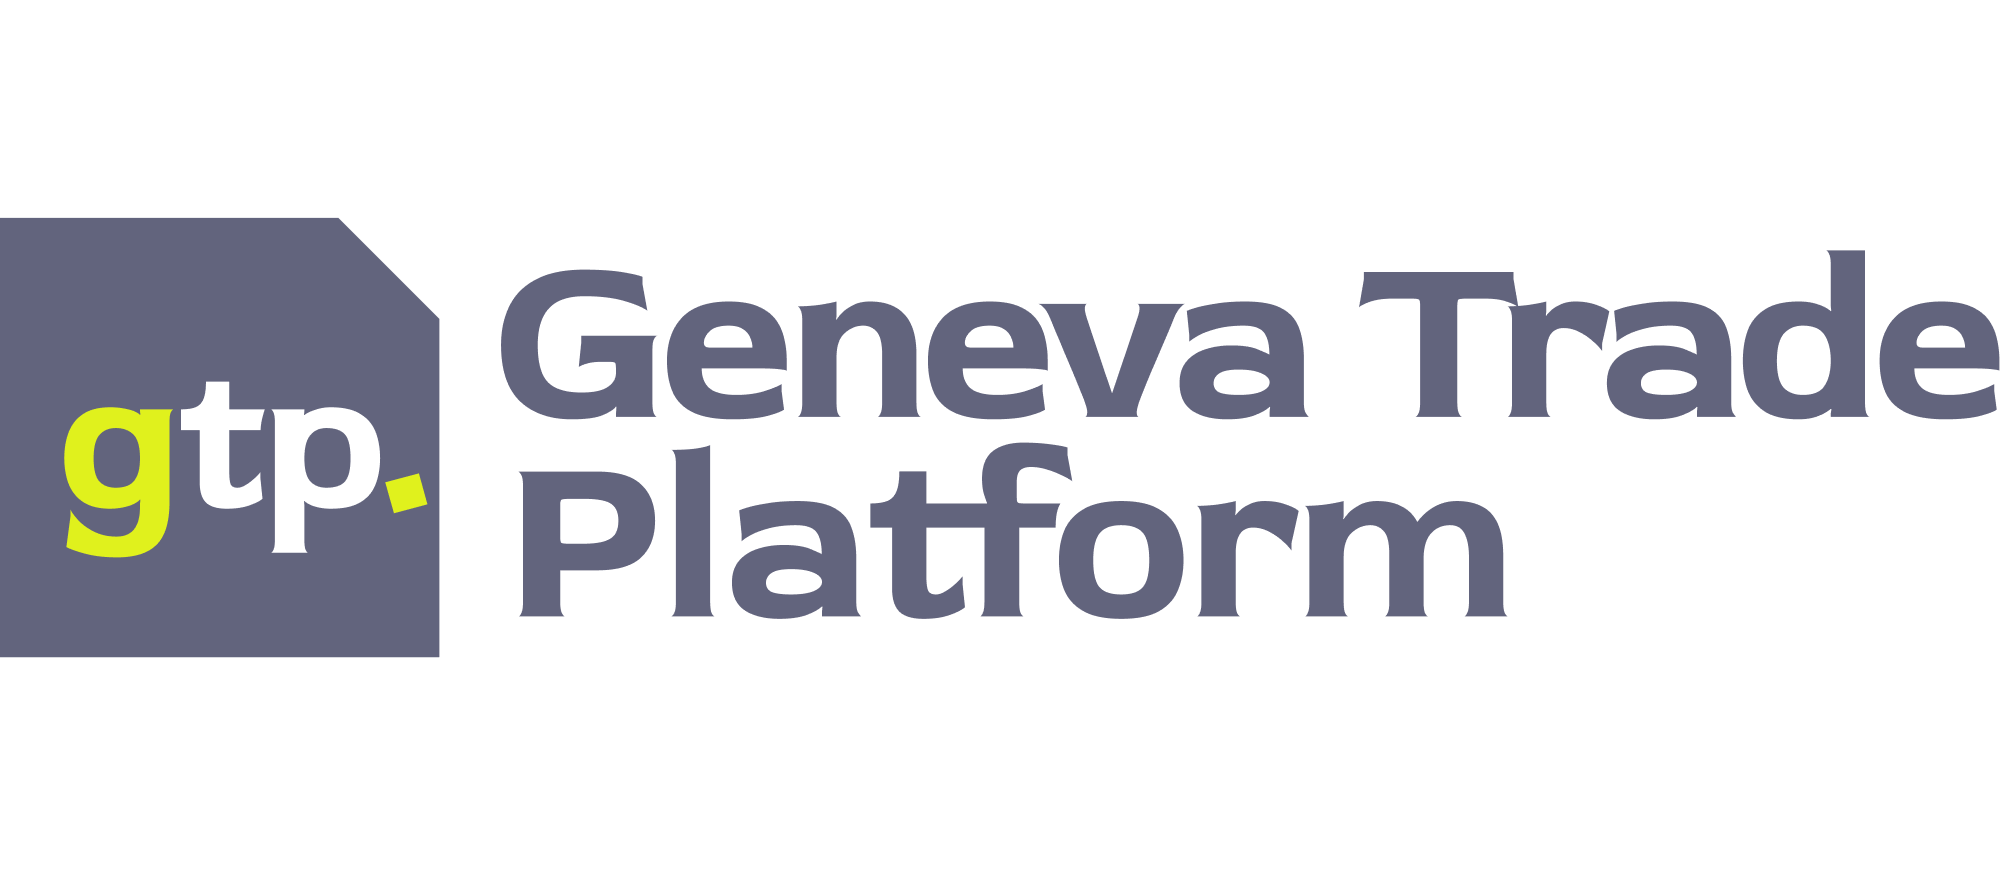 Geneva Trade Platform